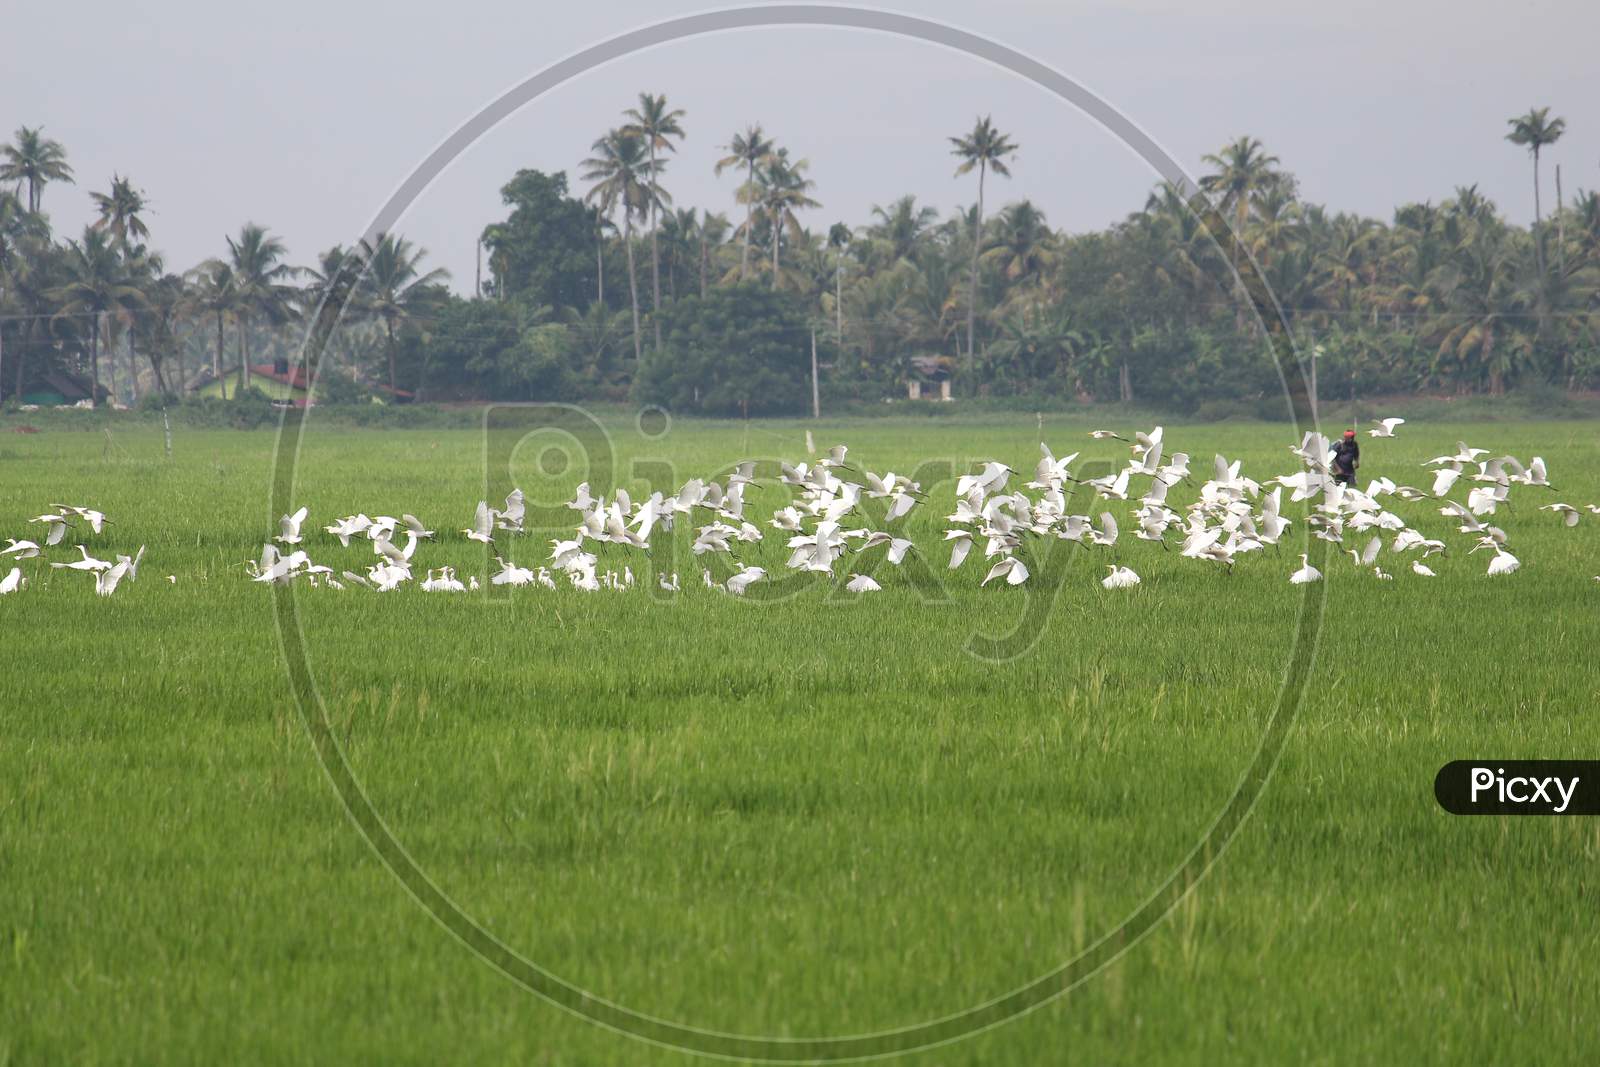 Flock of egret birds taking off in paddy field landscape / Kuttanad, Kerala state, India